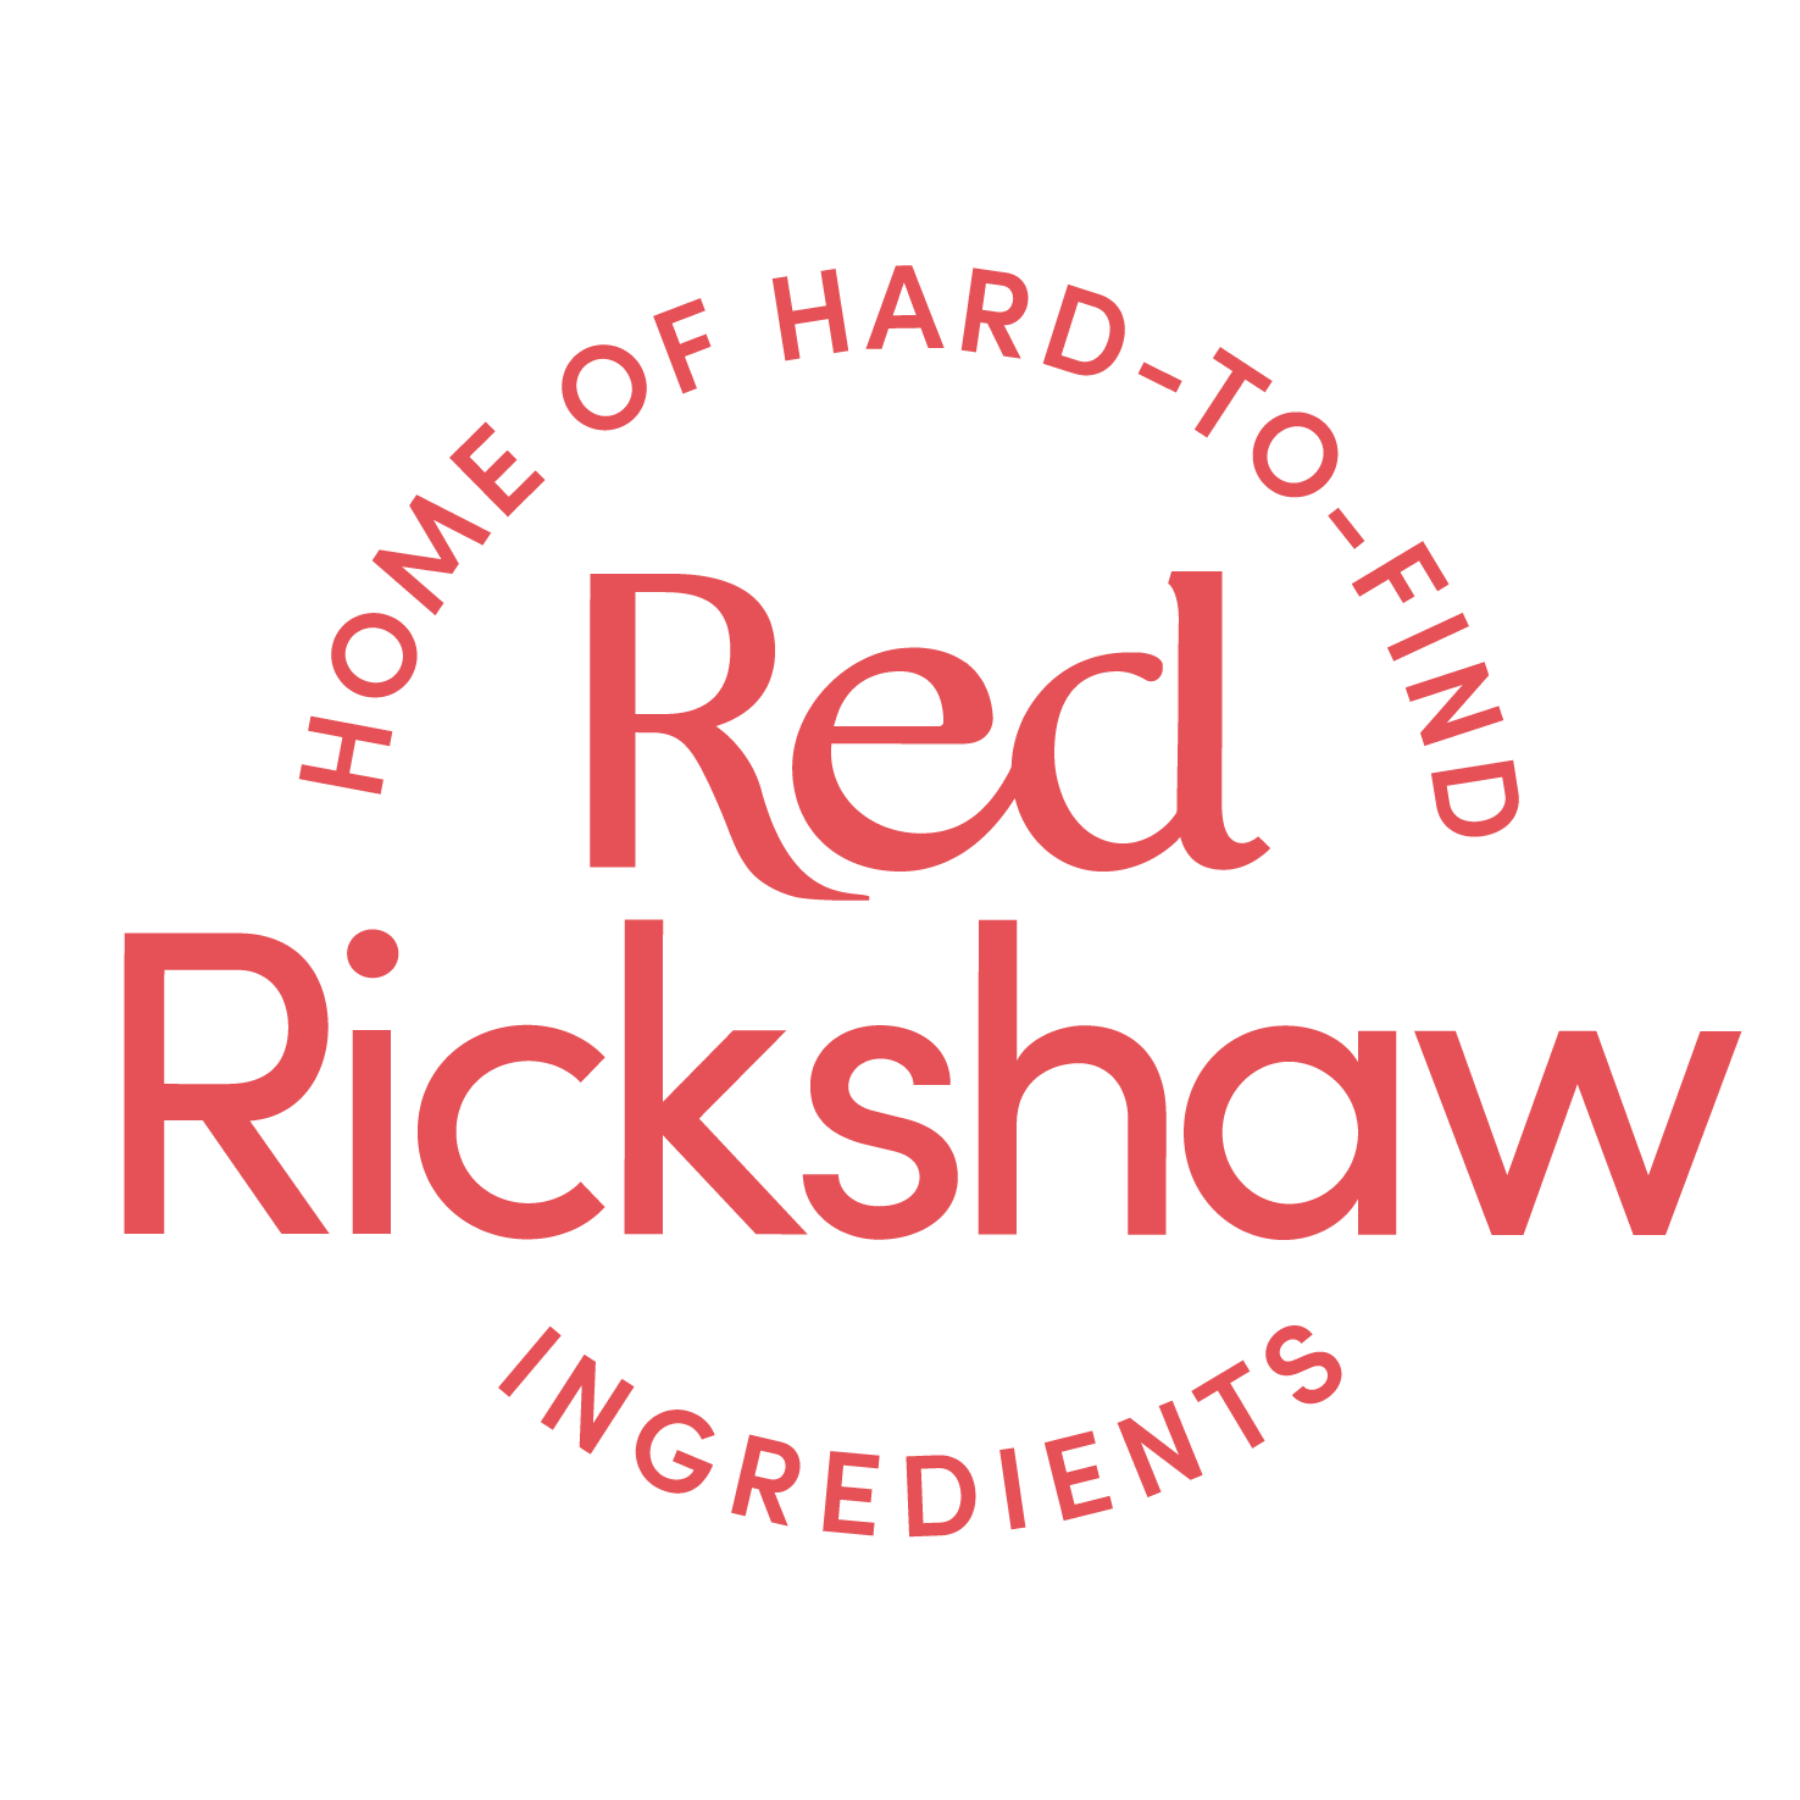 Red Rickshaw logo